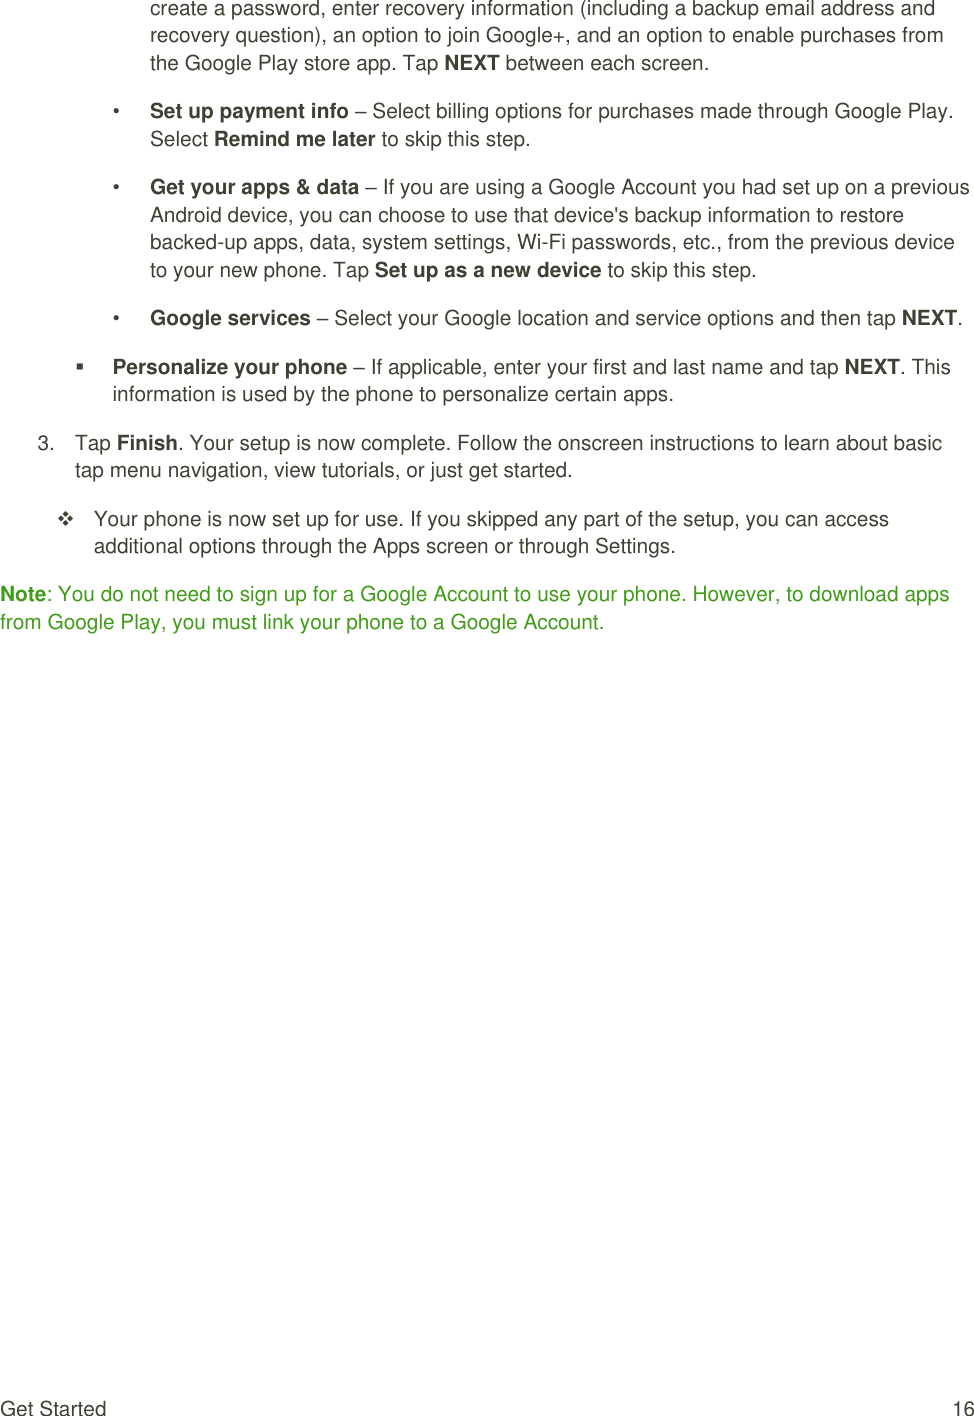 How To Use Kyocera E4281 User Manual